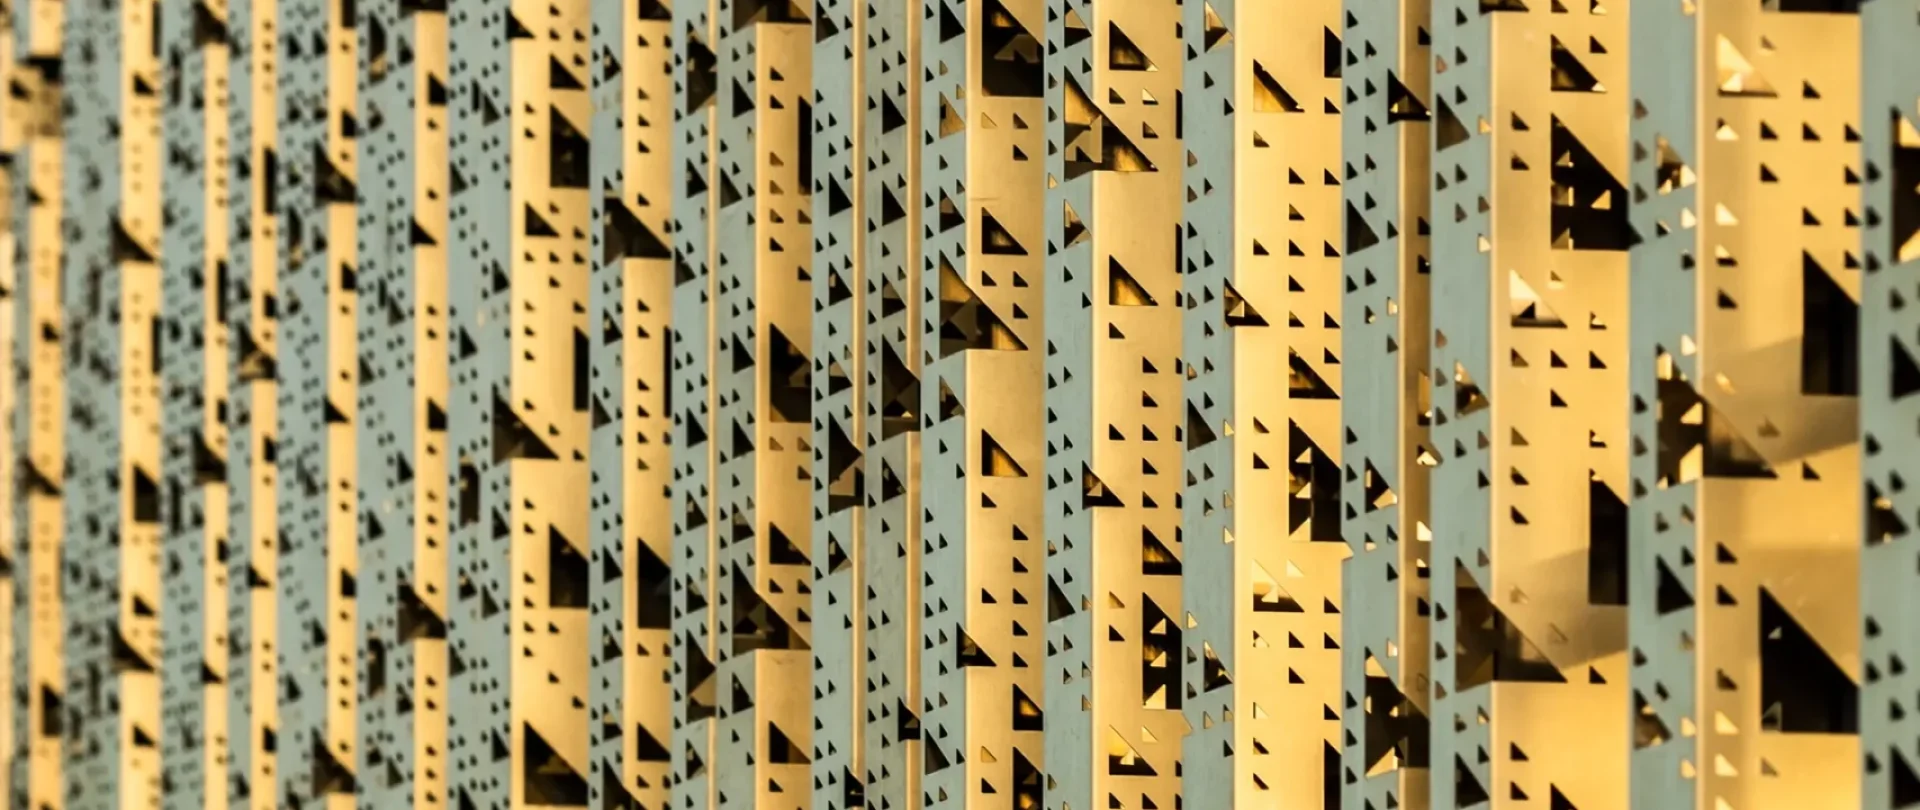 Parmet - Tartu Ülikooli Delta hoone fassaad arhitektuurifoto